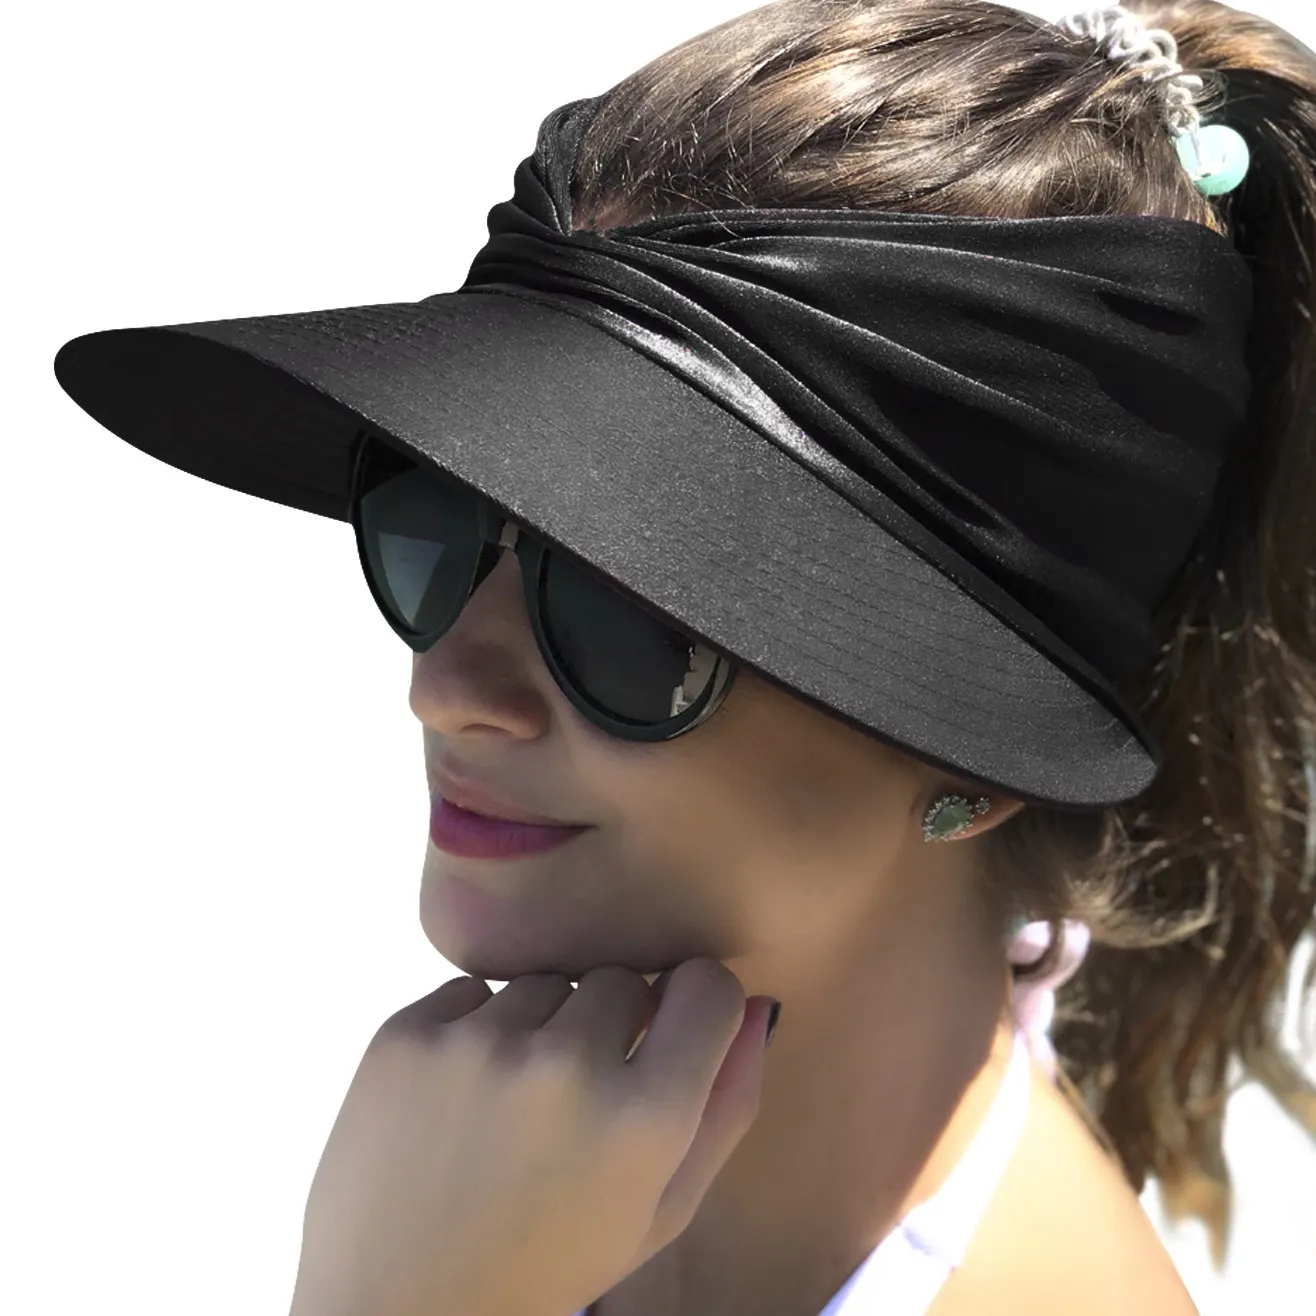 Chapéu de verão para mulheres, chapéu com viseira de sol, boné de verão com elástico anti-UV, boné de sol para mulheres e meninas, novidade